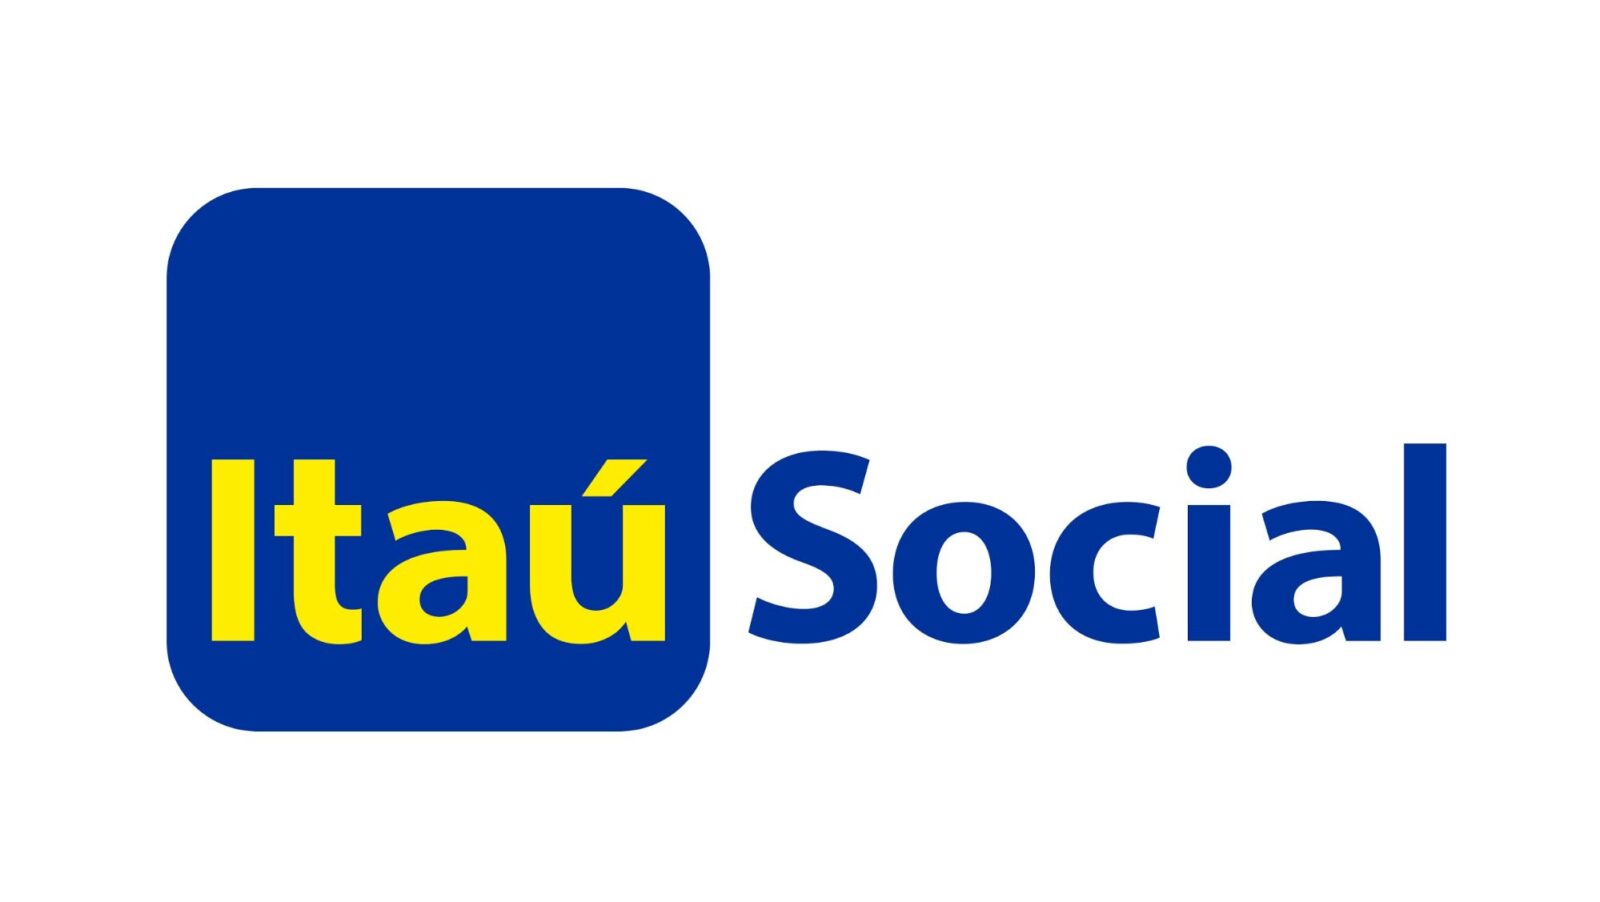 Itaú Social | Monitoring & Evaluation System